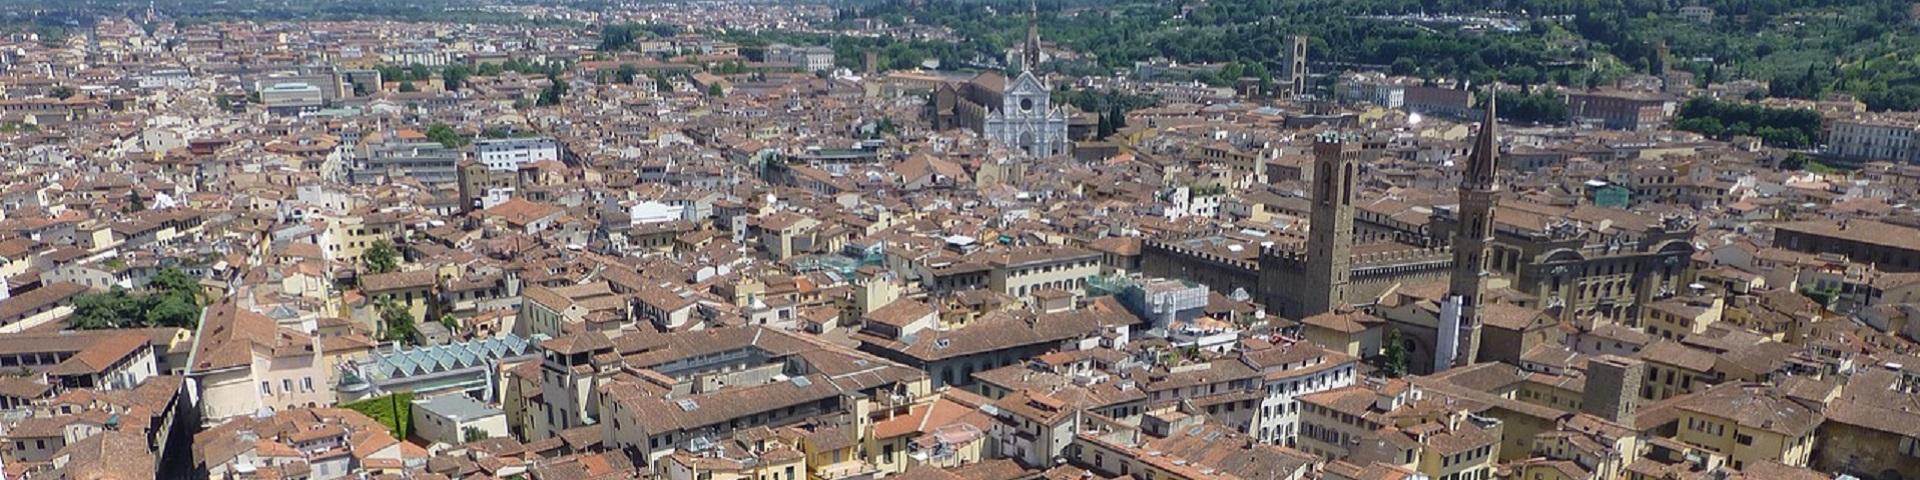 Vista aerea di Firenze